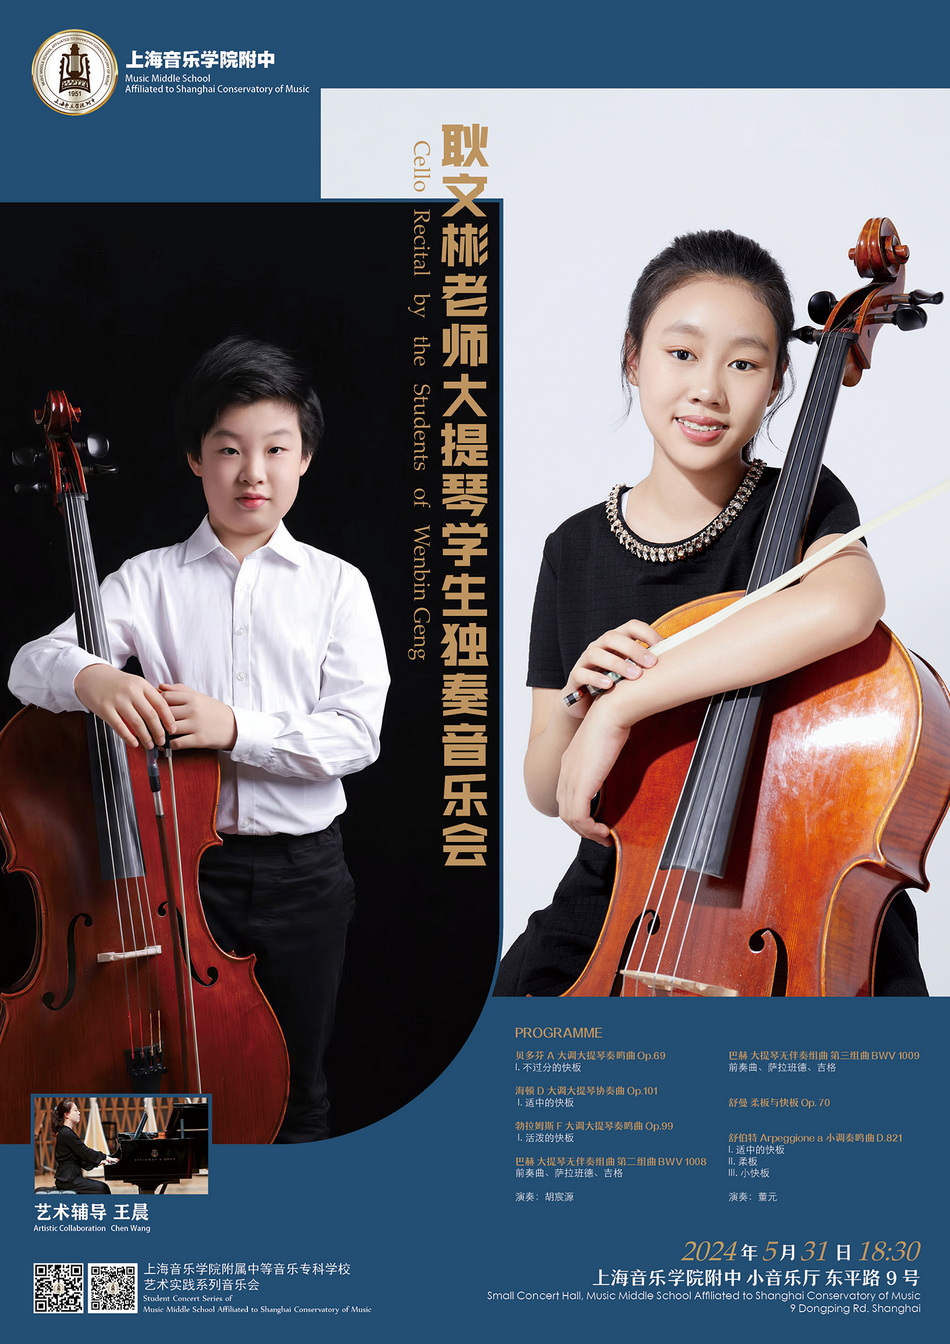 05-31 耿文彬老师大提琴学生独奏音乐会